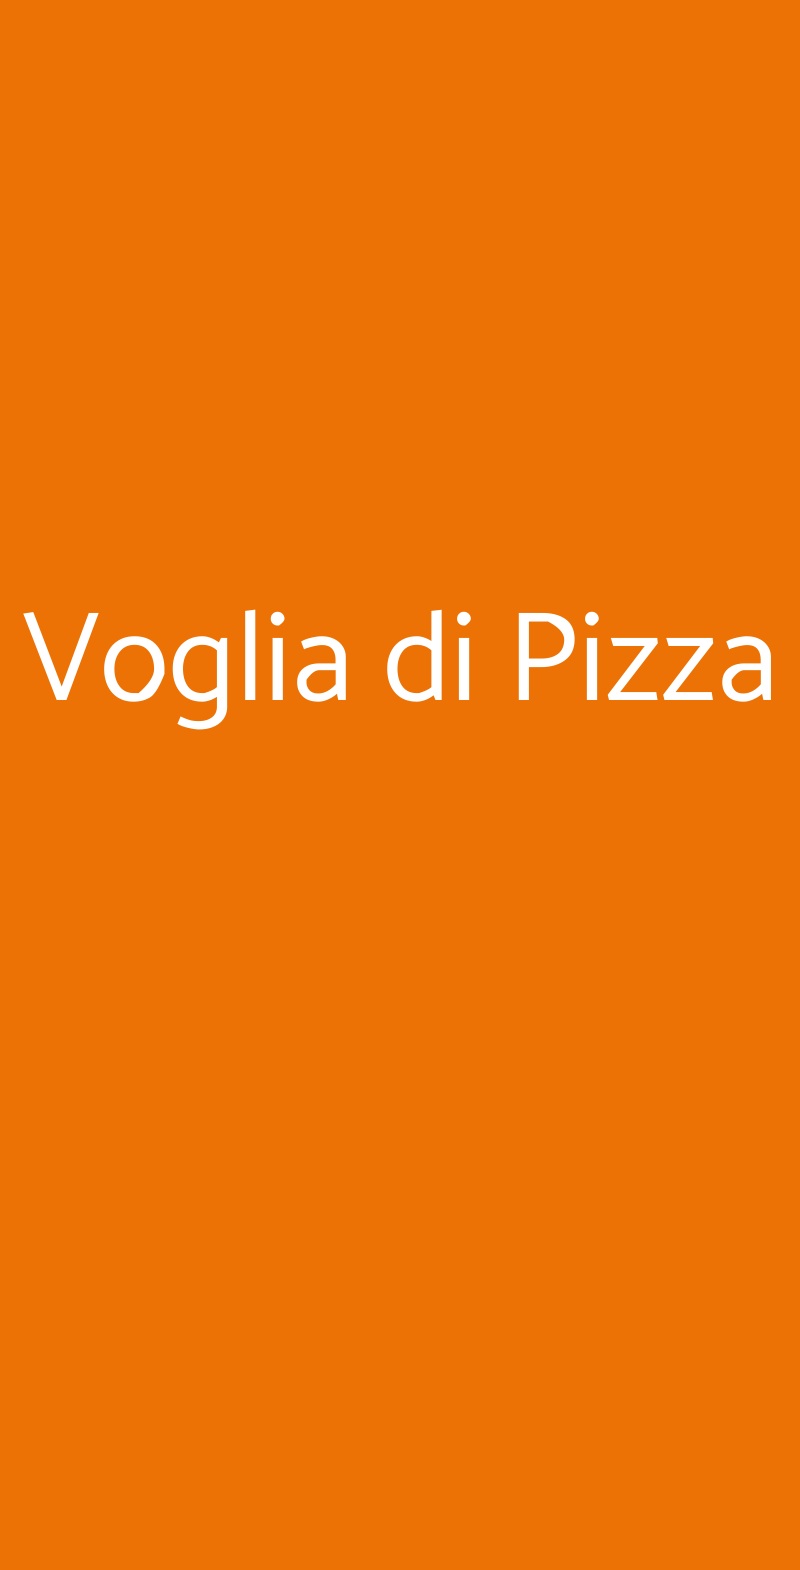 Voglia di Pizza Pessano con Bornago menù 1 pagina